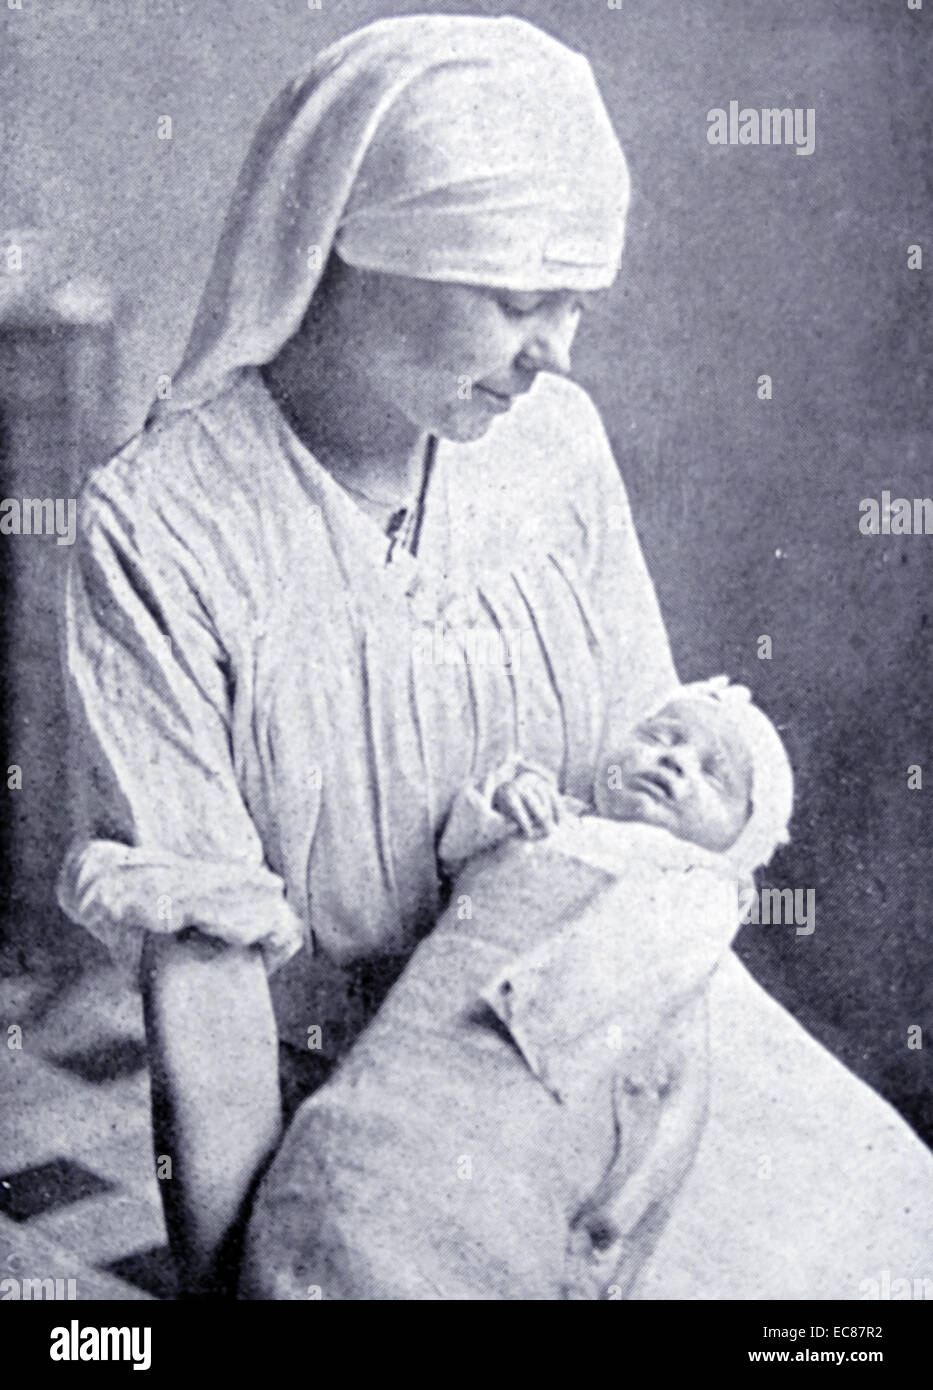 Fotografía de una enfermera francesa asistiendo a un huérfano durante la Primera Guerra Mundial. Fecha 1915 Foto de stock